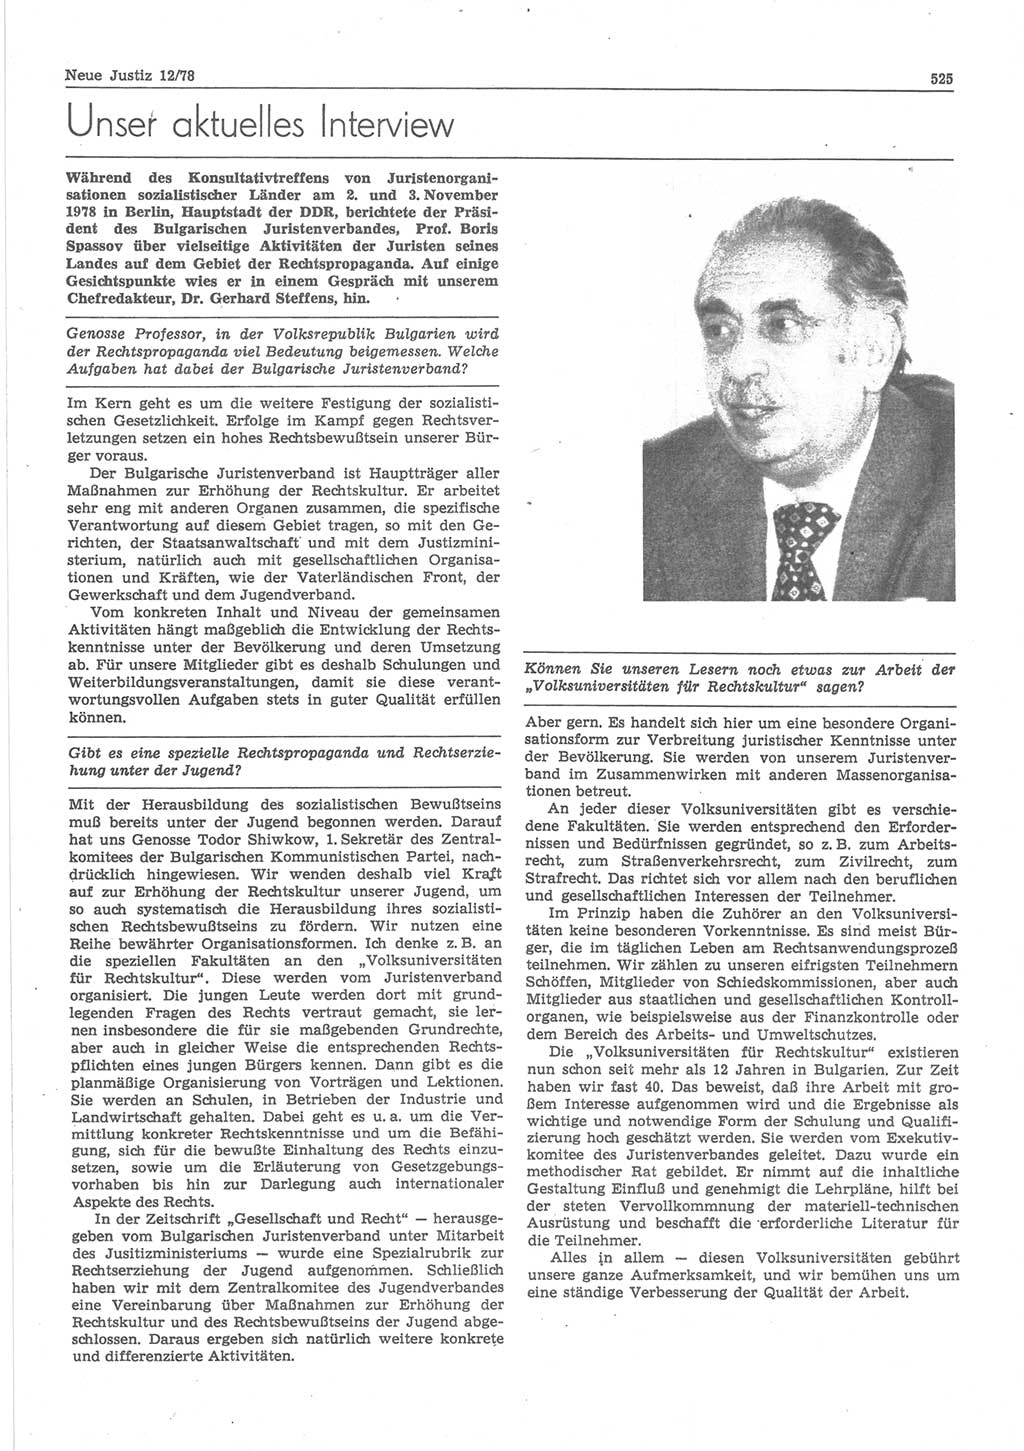 Neue Justiz (NJ), Zeitschrift für sozialistisches Recht und Gesetzlichkeit [Deutsche Demokratische Republik (DDR)], 32. Jahrgang 1978, Seite 525 (NJ DDR 1978, S. 525)